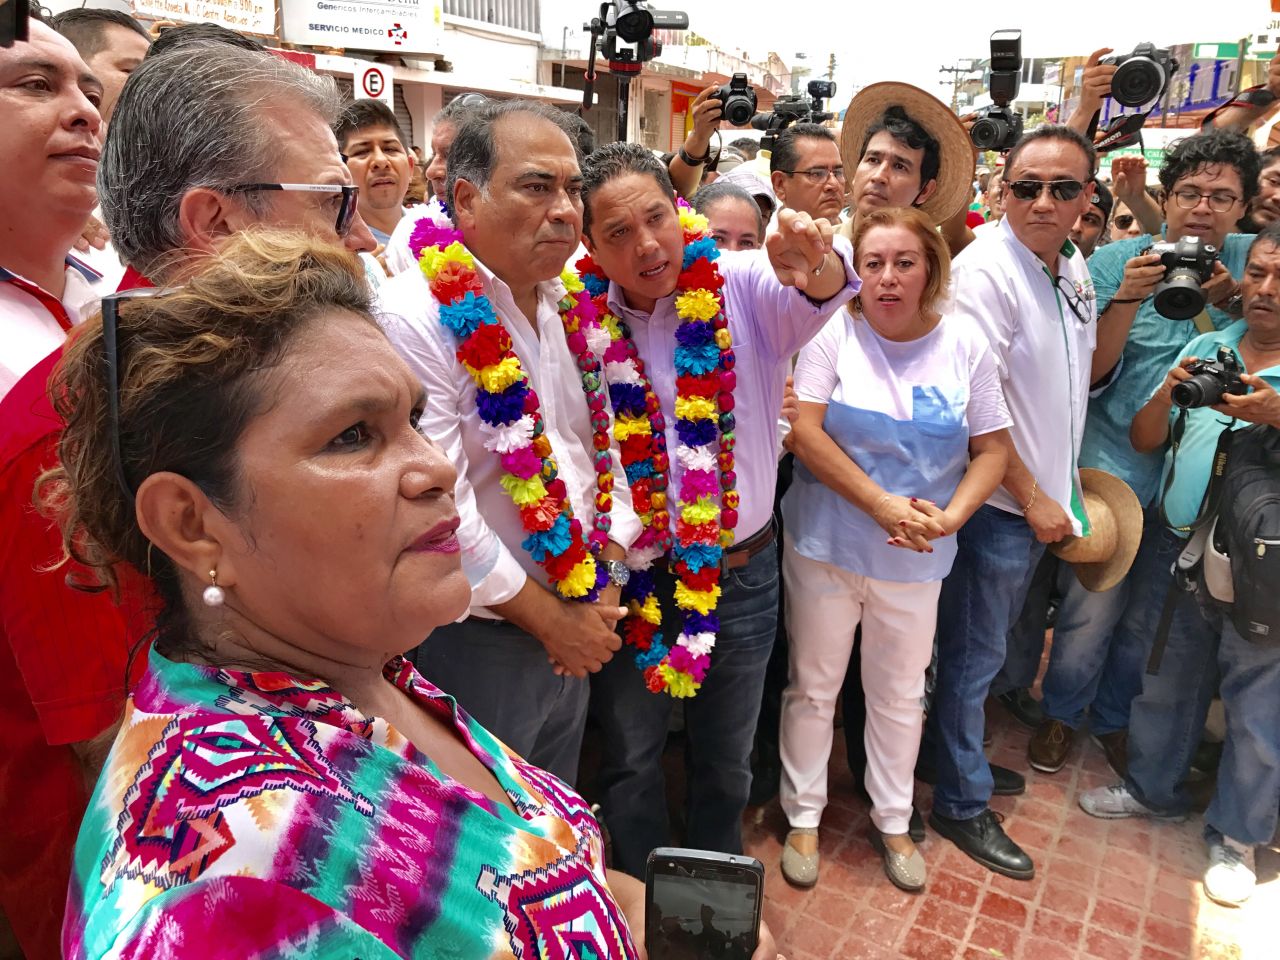 Se renueva el Acapulco Tradicional; inauguran Astudillo y Evodio nueva imagen del Centro 